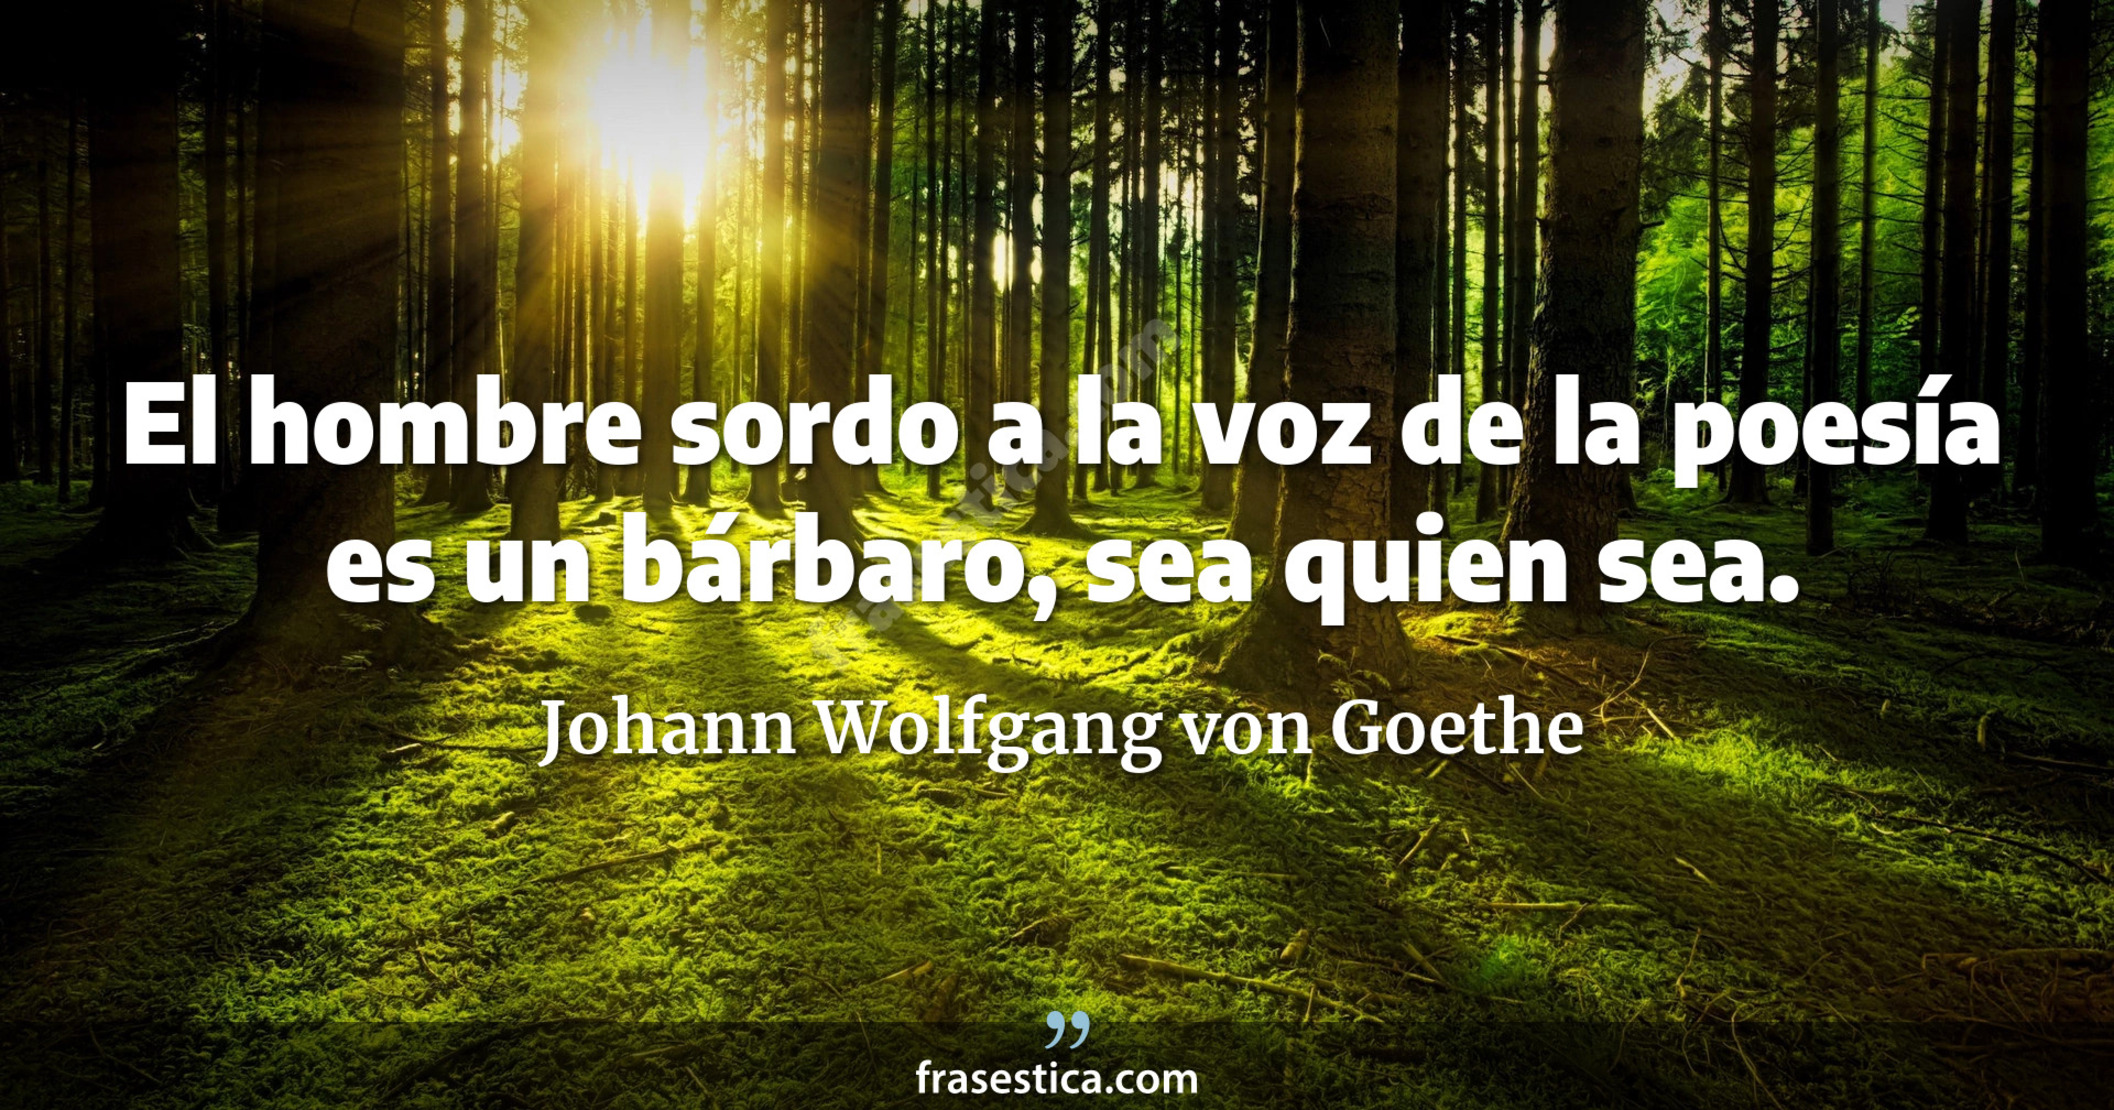 El hombre sordo a la voz de la poesía es un bárbaro, sea quien sea. - Johann Wolfgang von Goethe